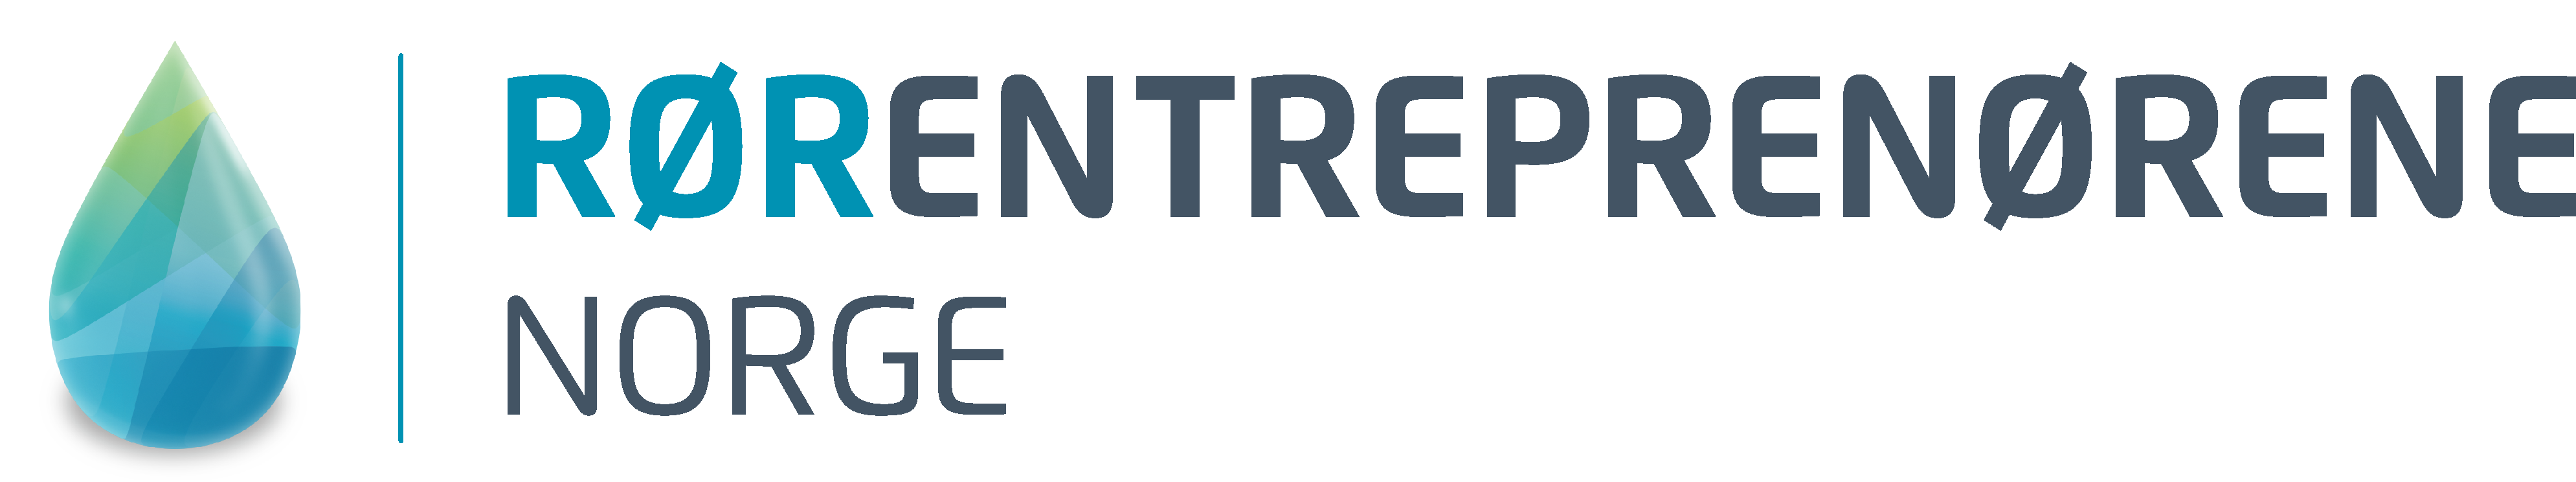 Logo - Rørentreprenørene Norge